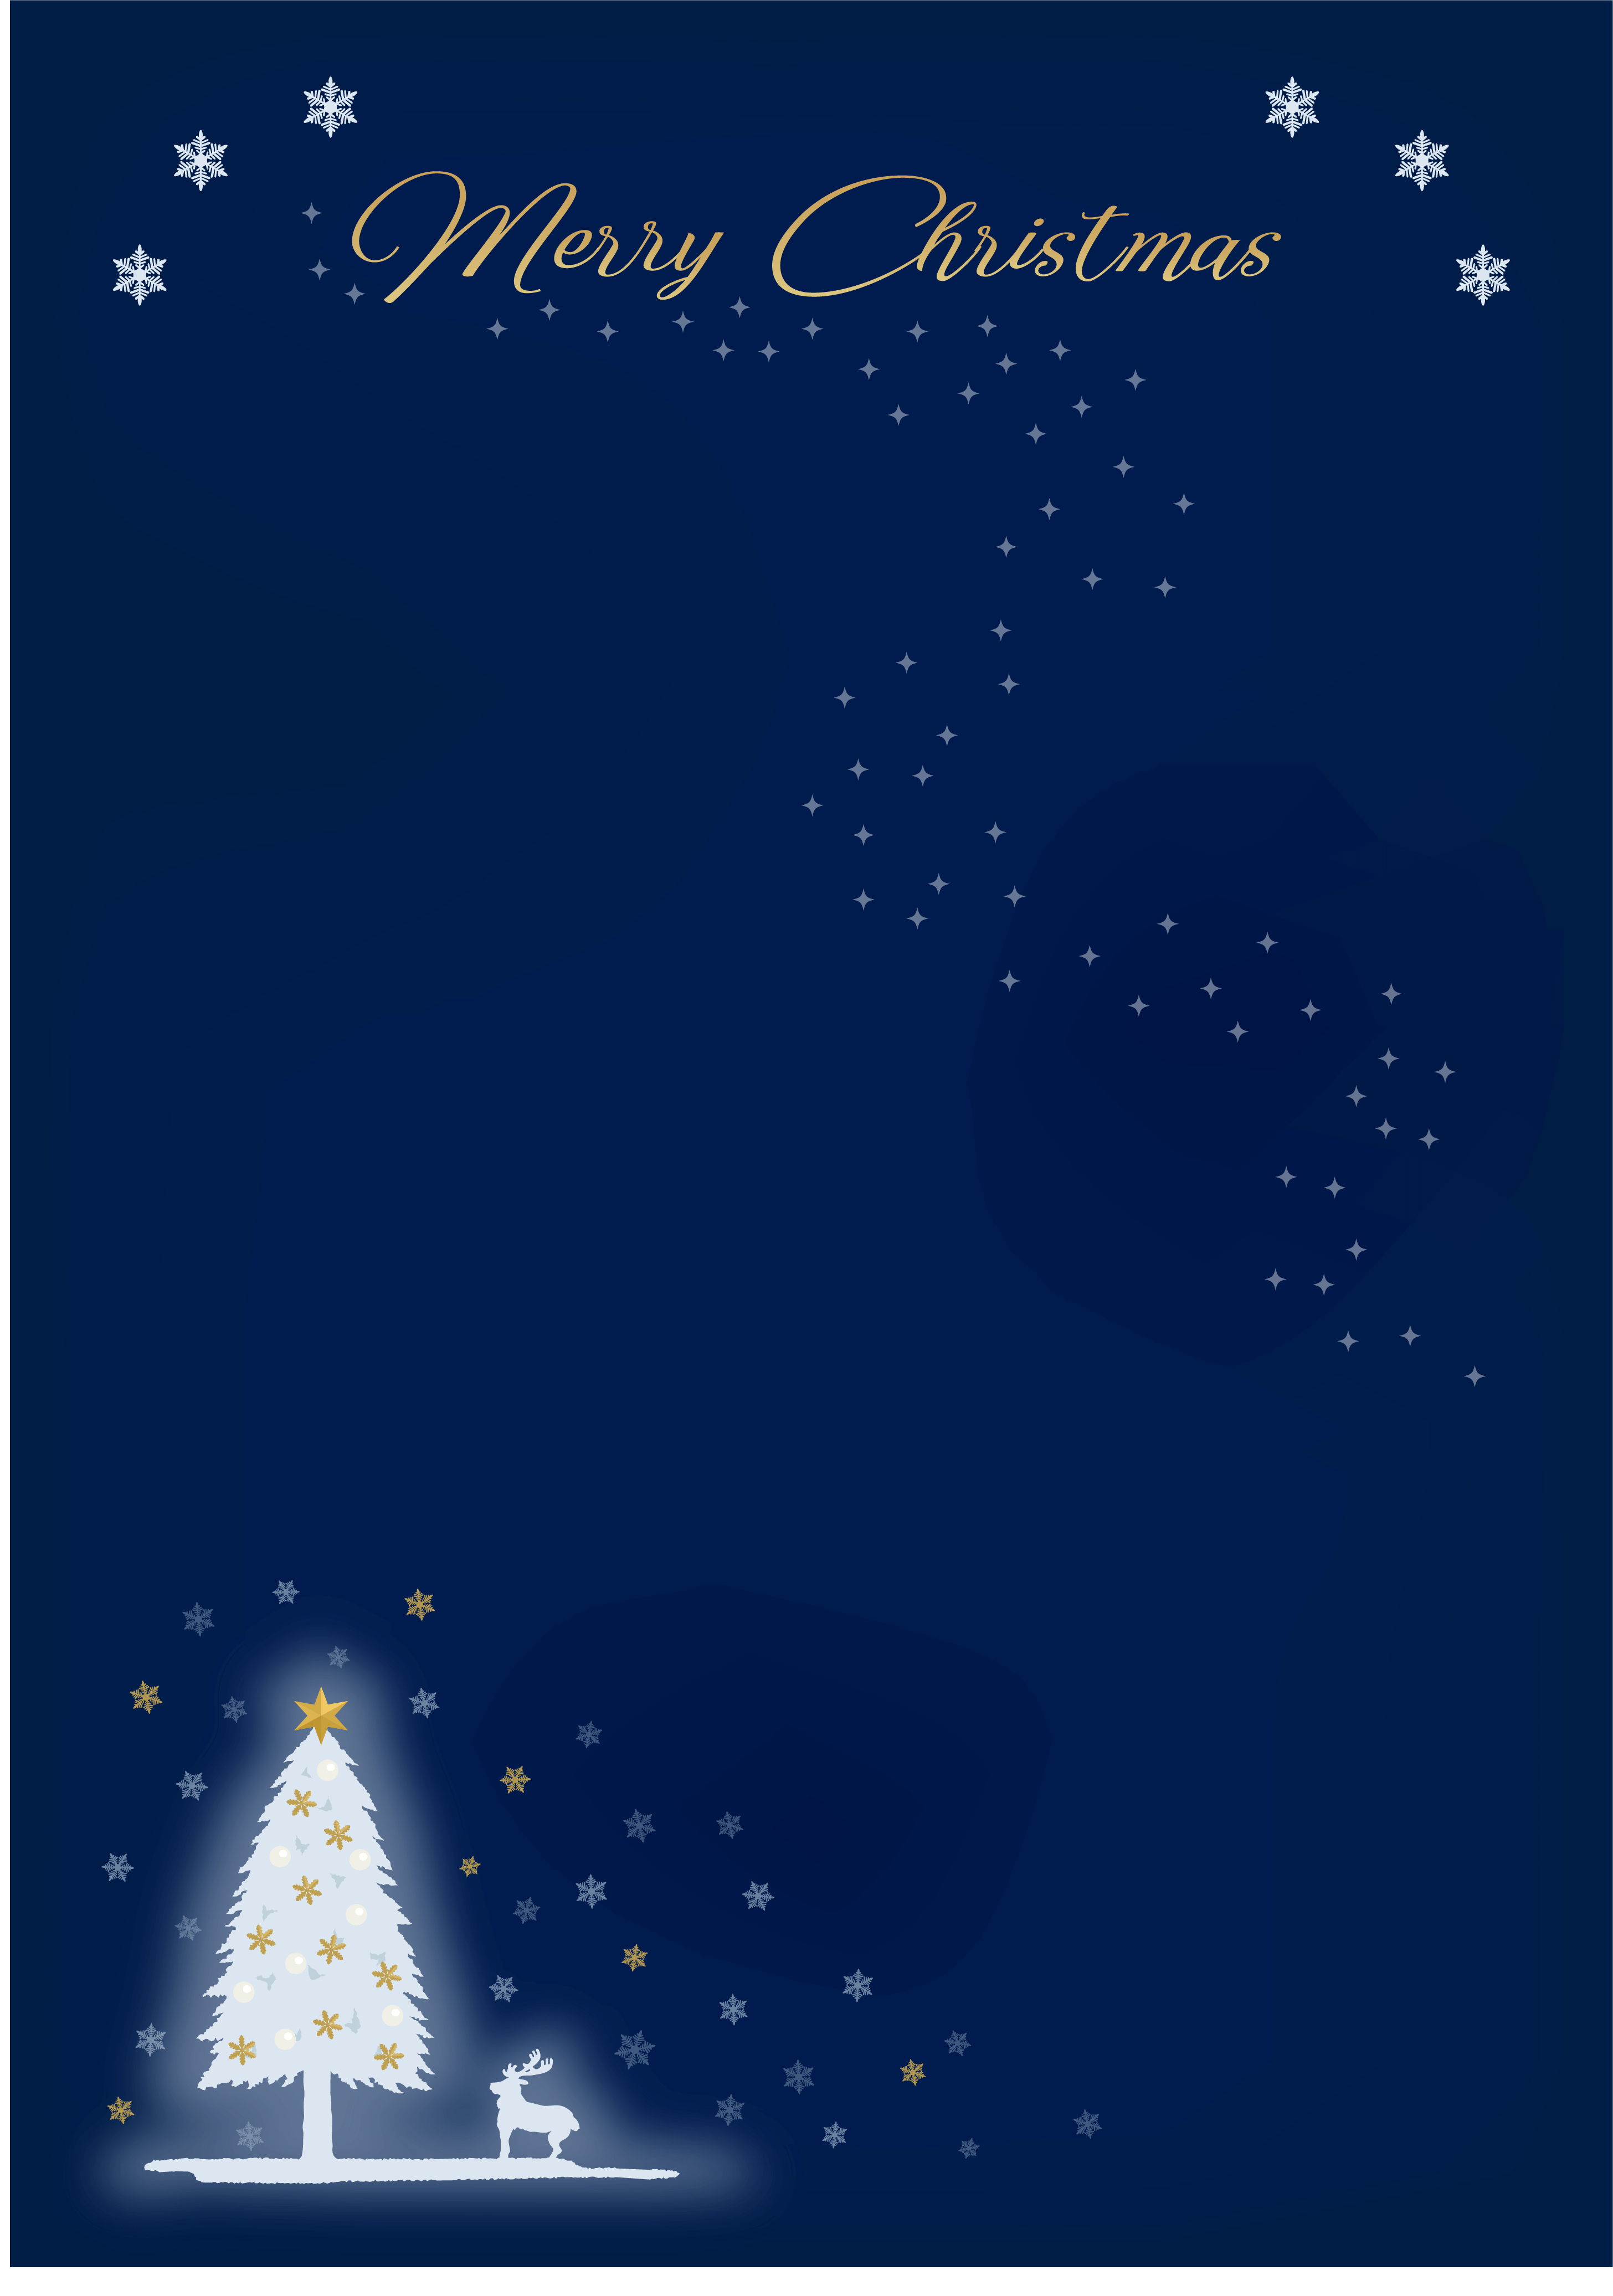 冬の夜をイメージしたクリスマスチラシの背景素材イラスト